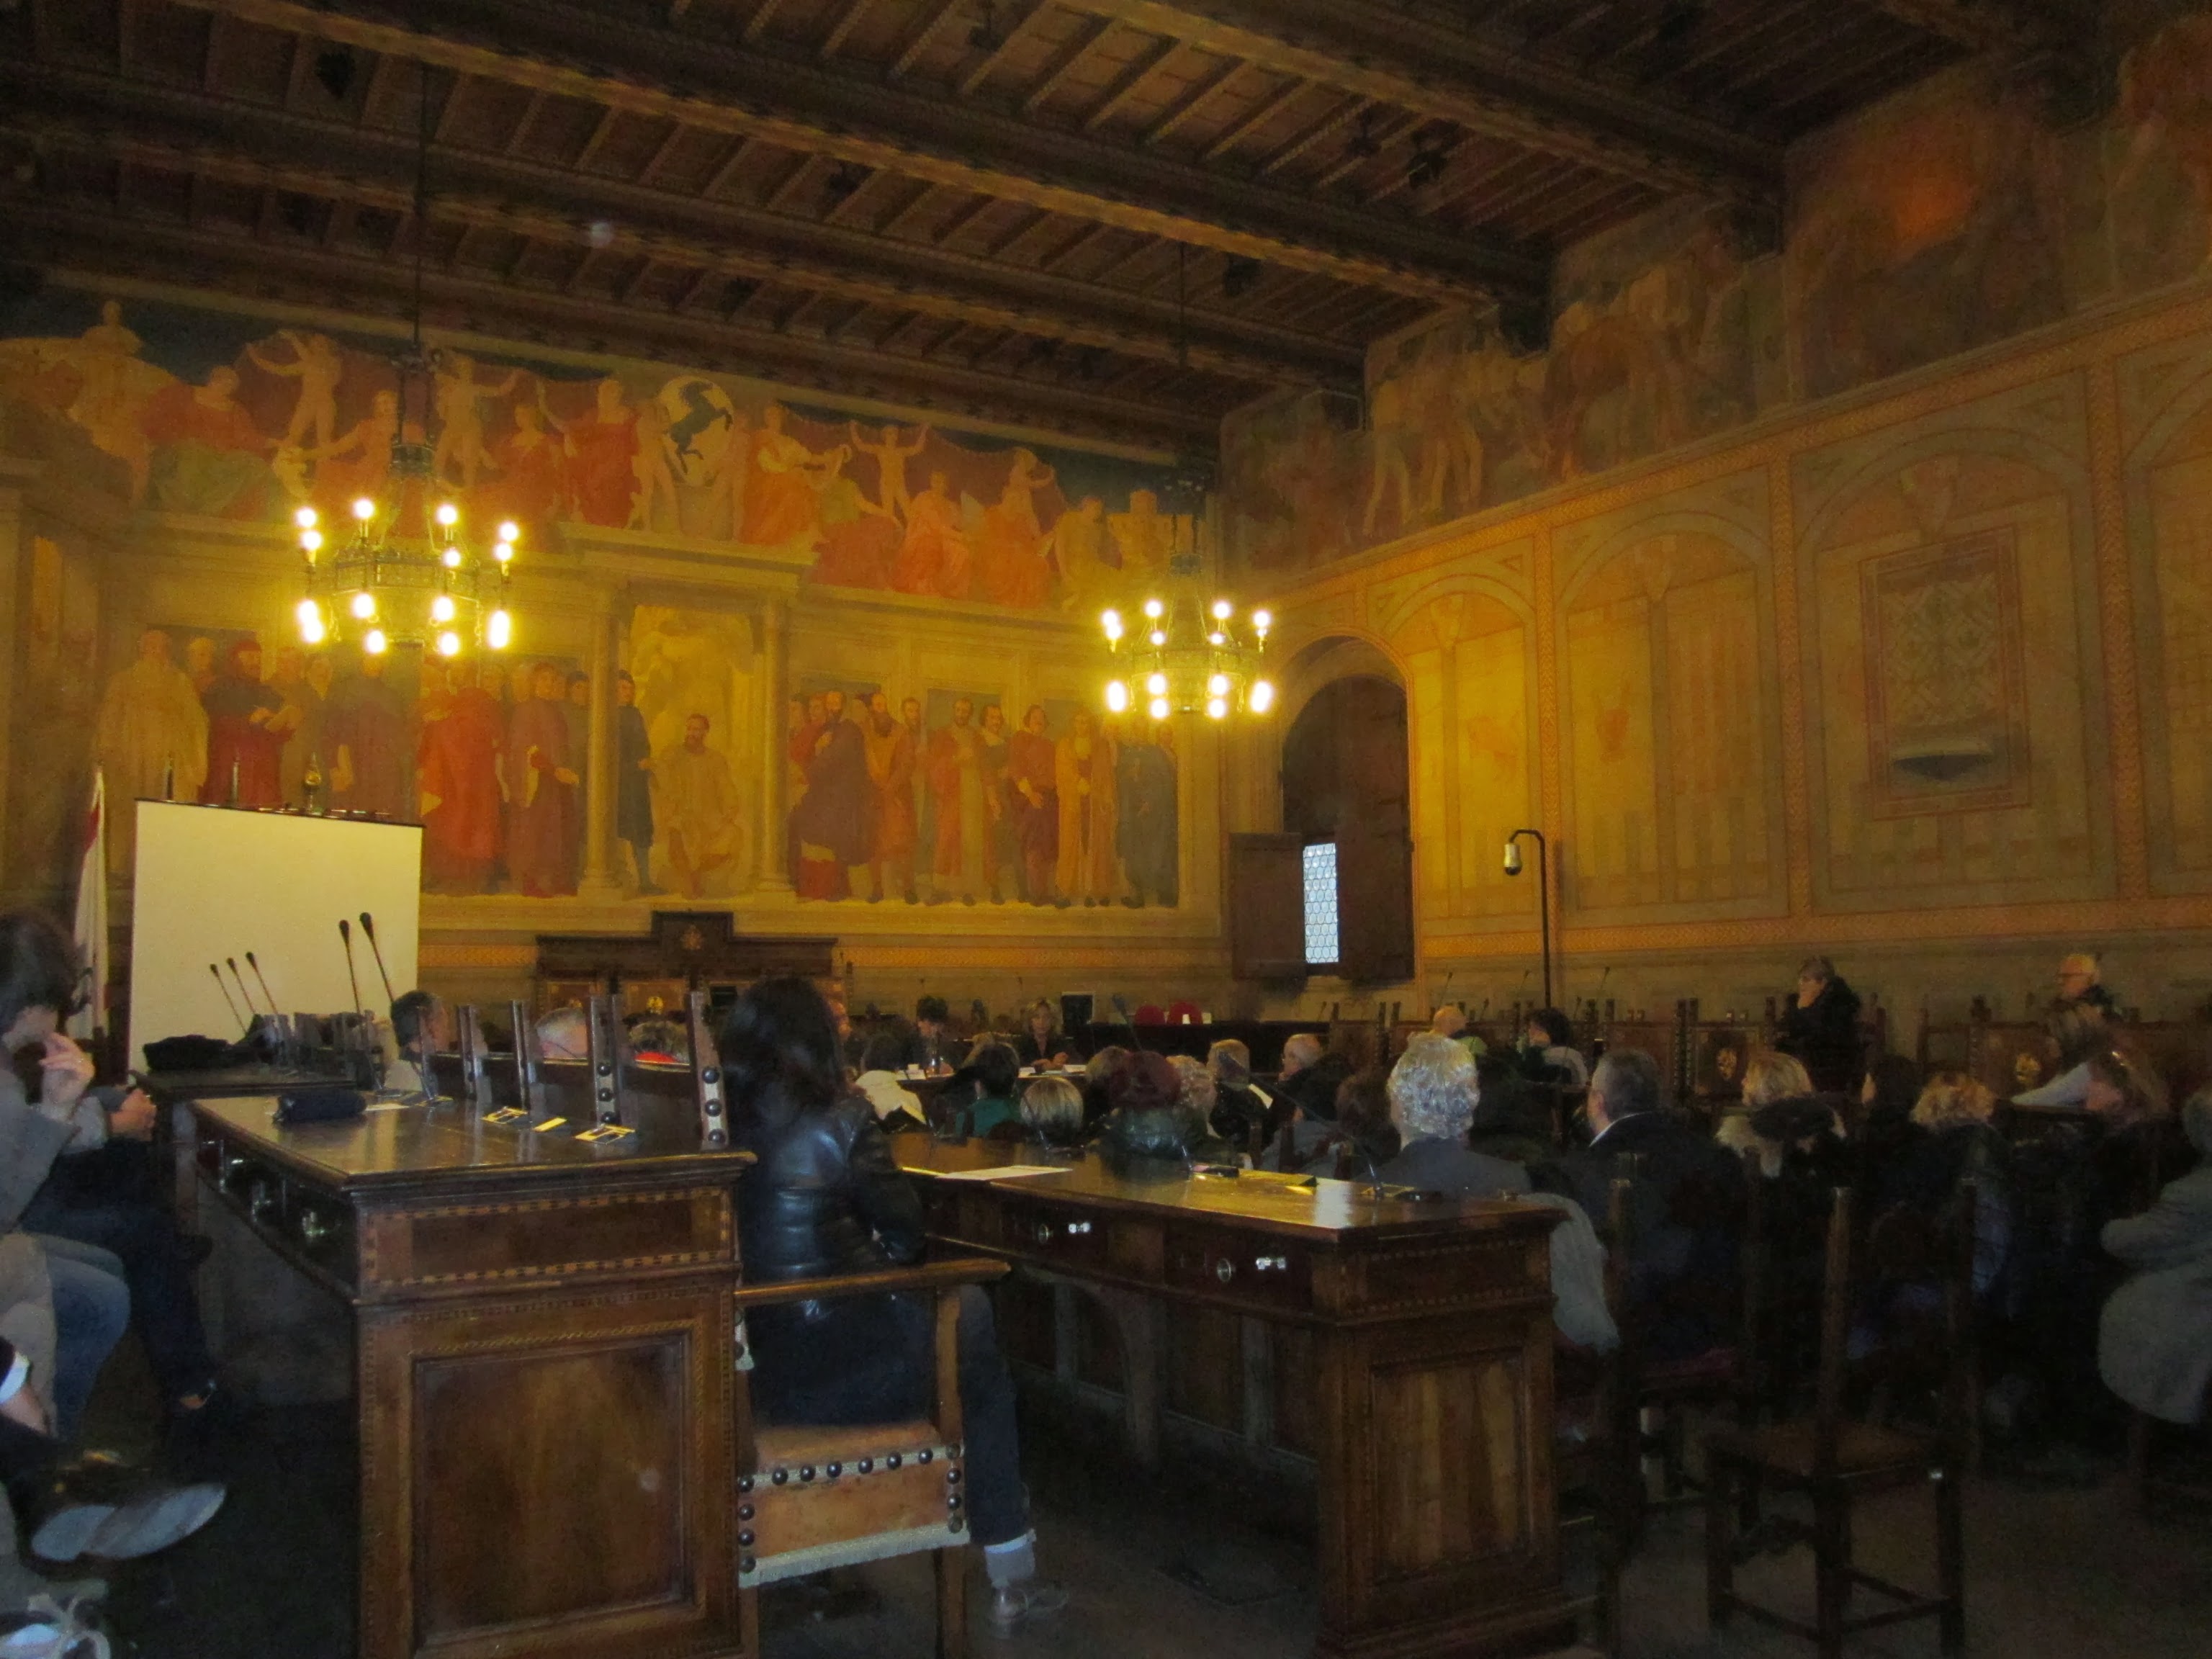 Politecnico MI, Firenze, Milano, Roma - Rapporto sulle liberalizzazioni - maggio giugno 2013